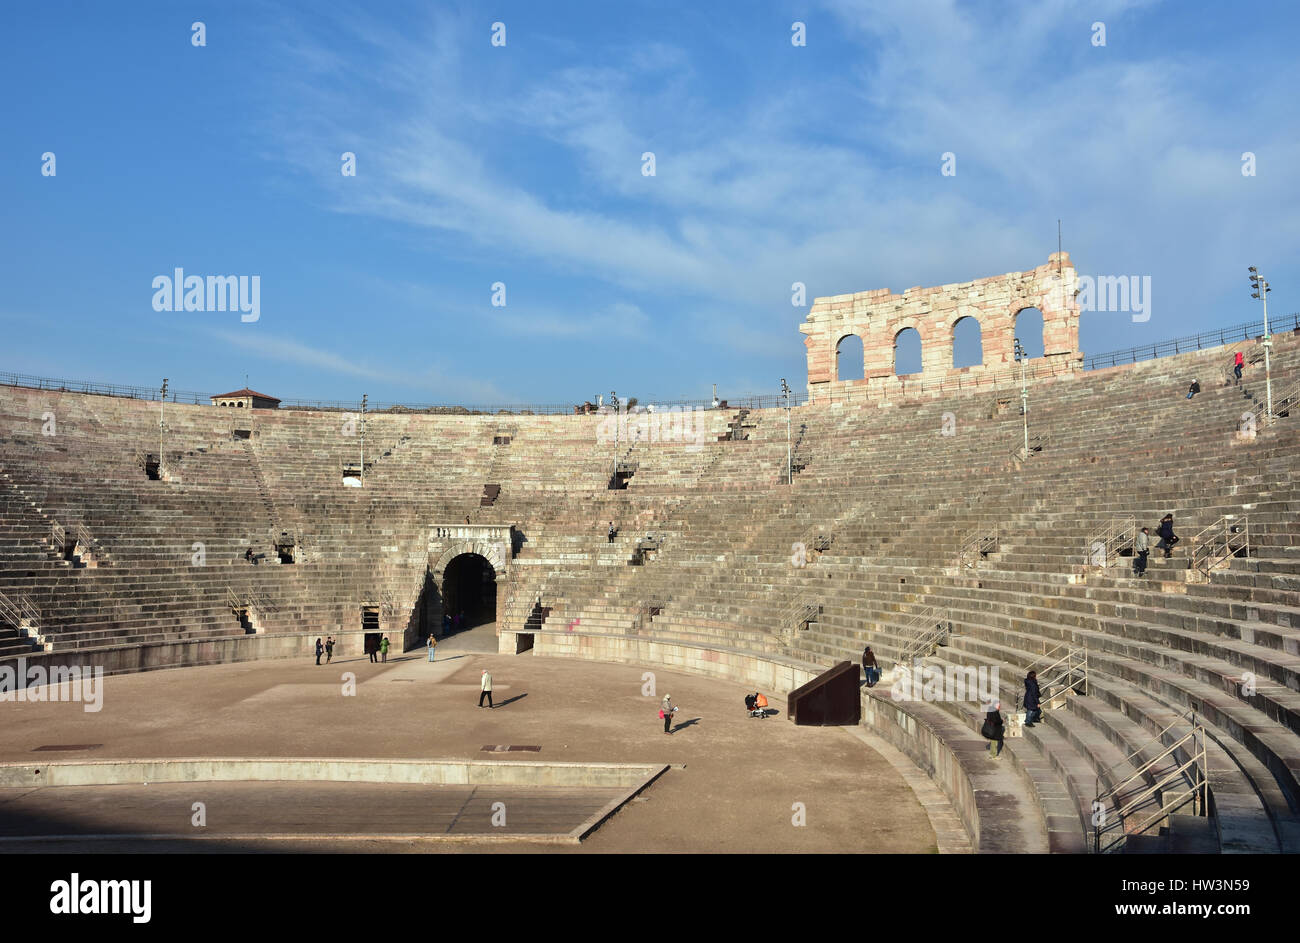 Vista panoramica di Arena di Verona cavea, un antico anfiteatro romano ancora in uso Foto Stock